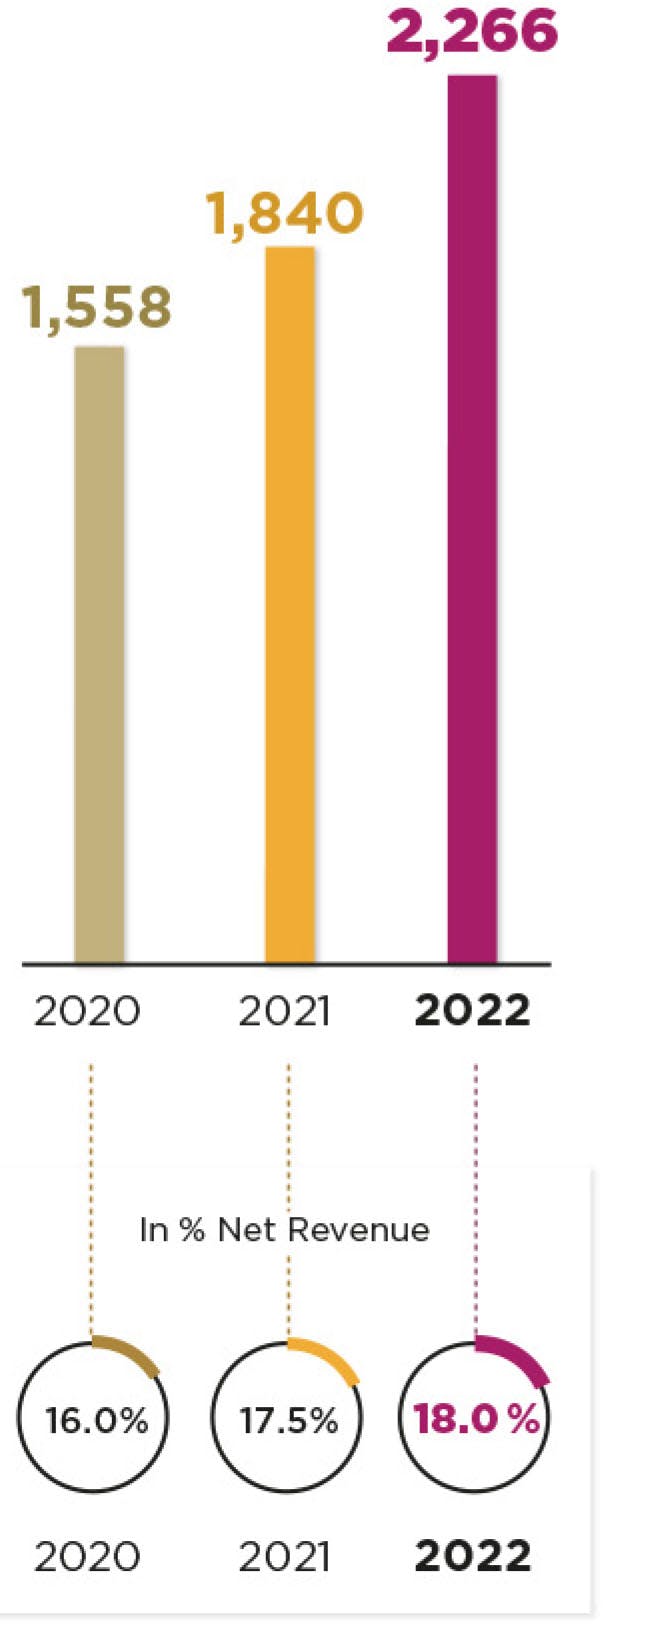 2020 : 1,558 millions of euros. 2021 : 1,840 millions of euros. 2022 : 2,266 millions of euros. In % net Revenue : 2020 : 16,0 %. 2021 : 17,5 %. 2022 : 18,0 %